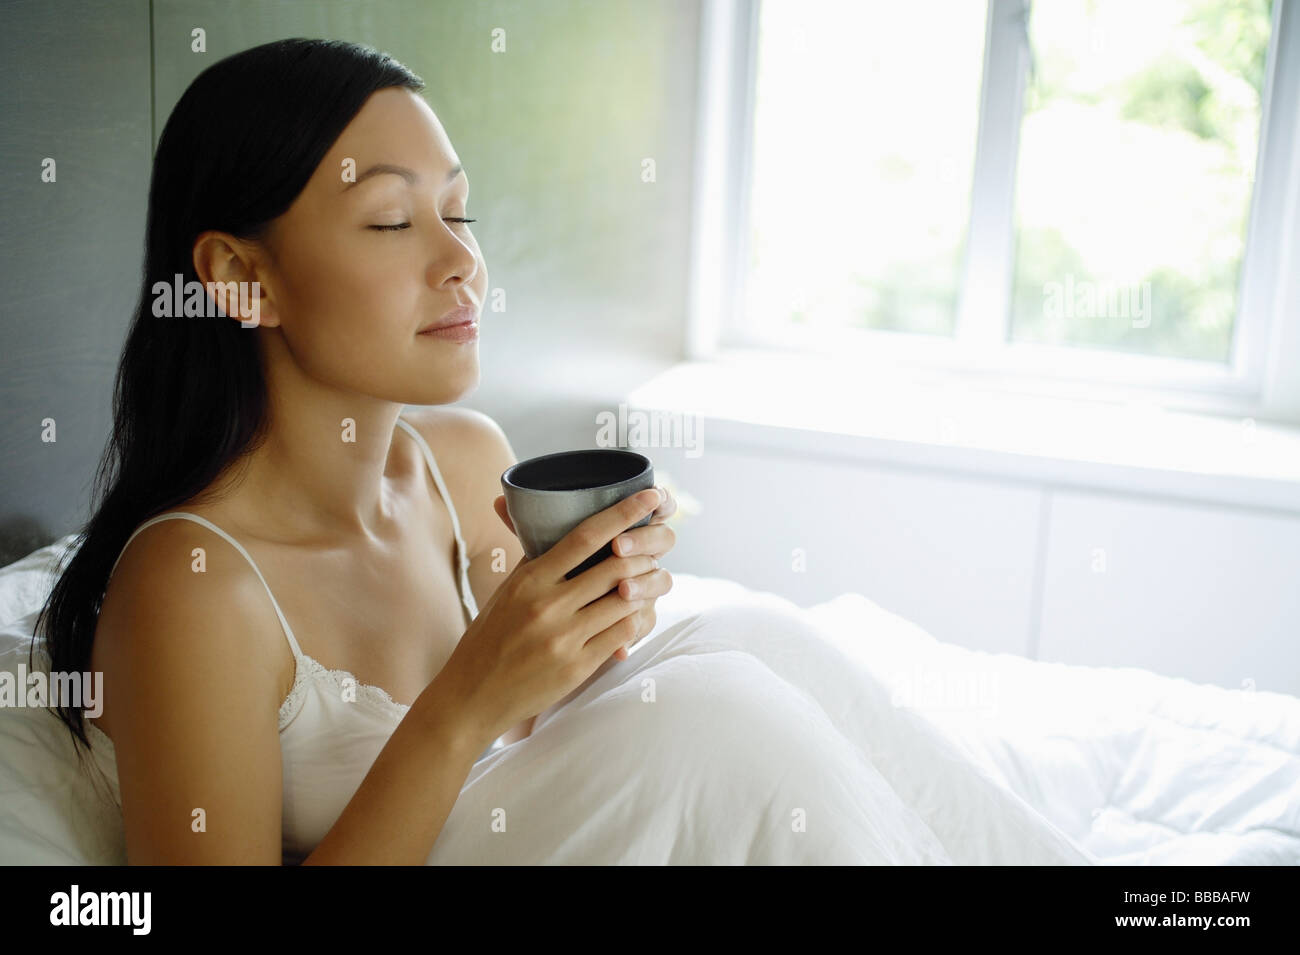 Femme assise dans son lit, les yeux fermés, holding cup Banque D'Images